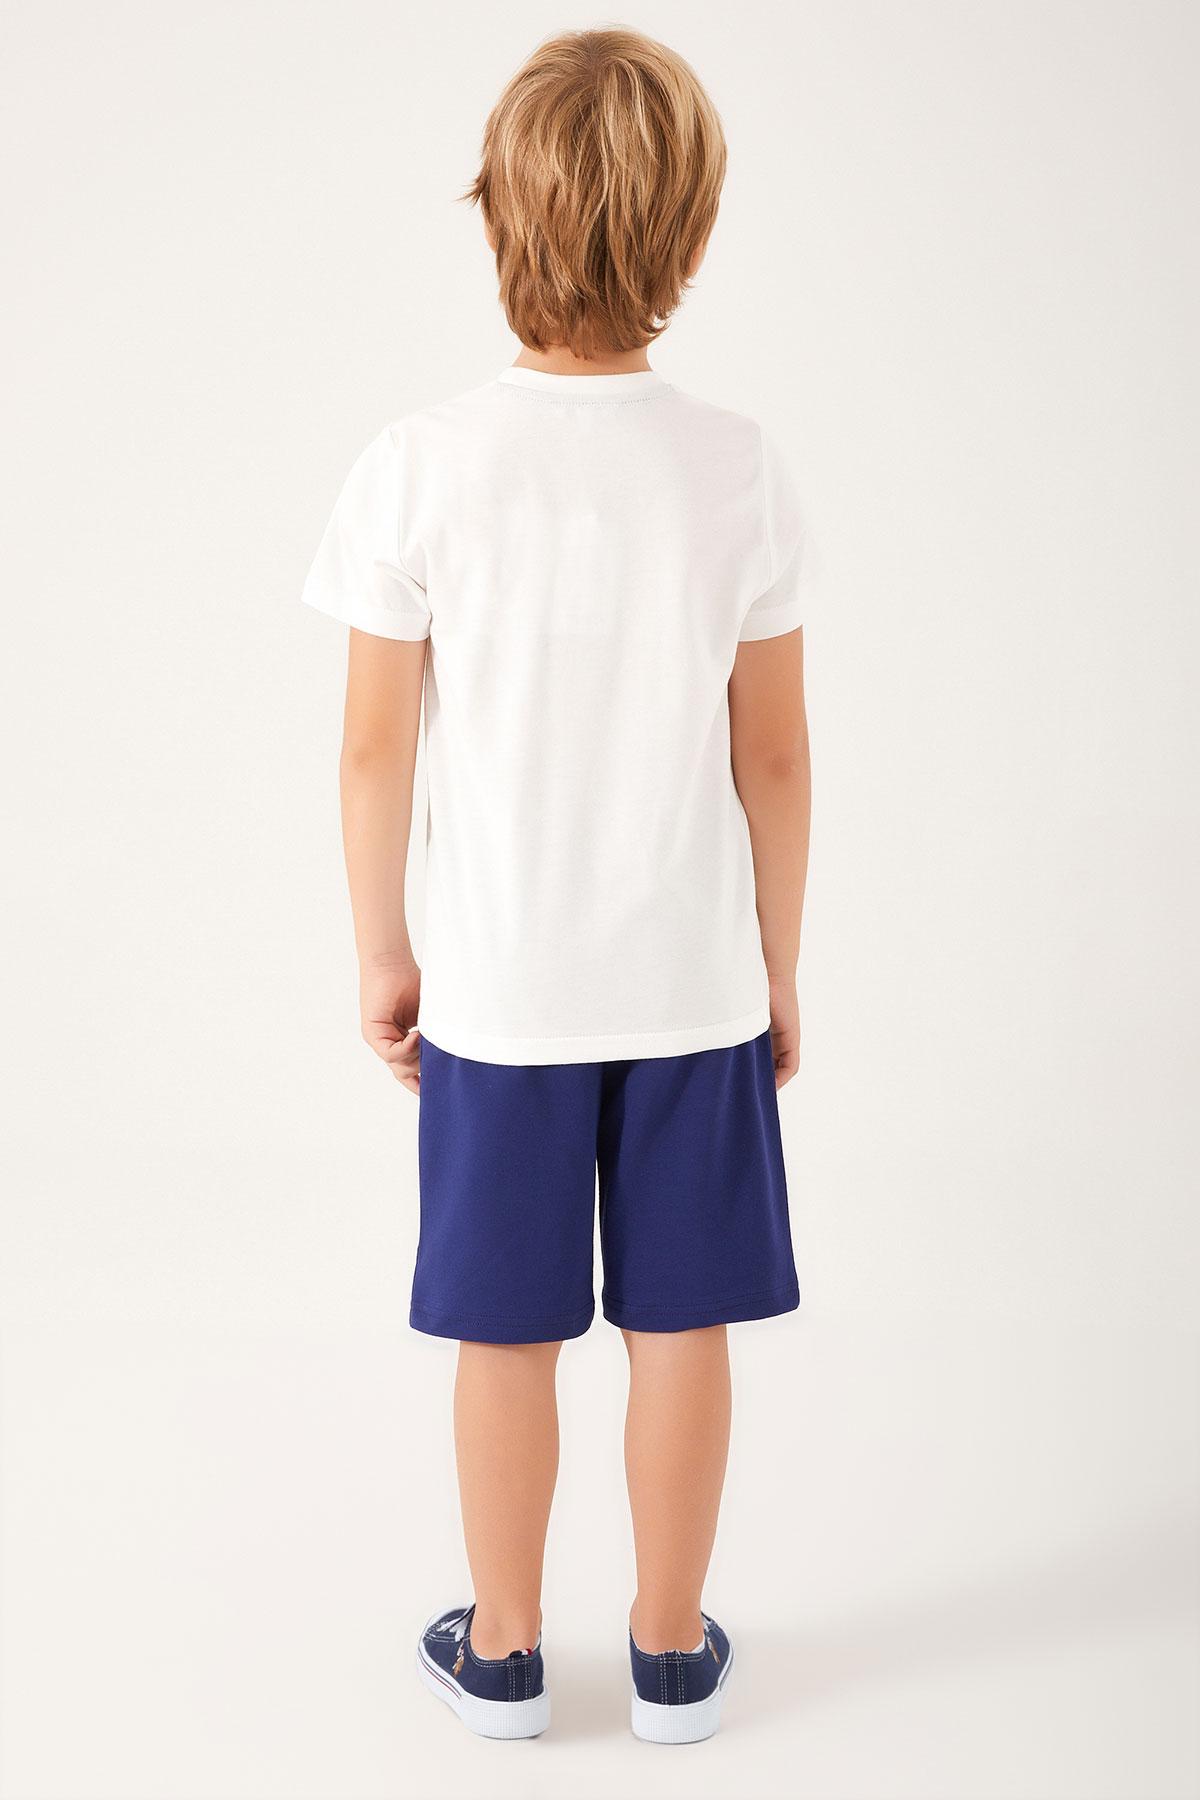 Selected image for U.S. POLO ASSN. Komplet šorc i majica za dečake US1325-G teget-beli